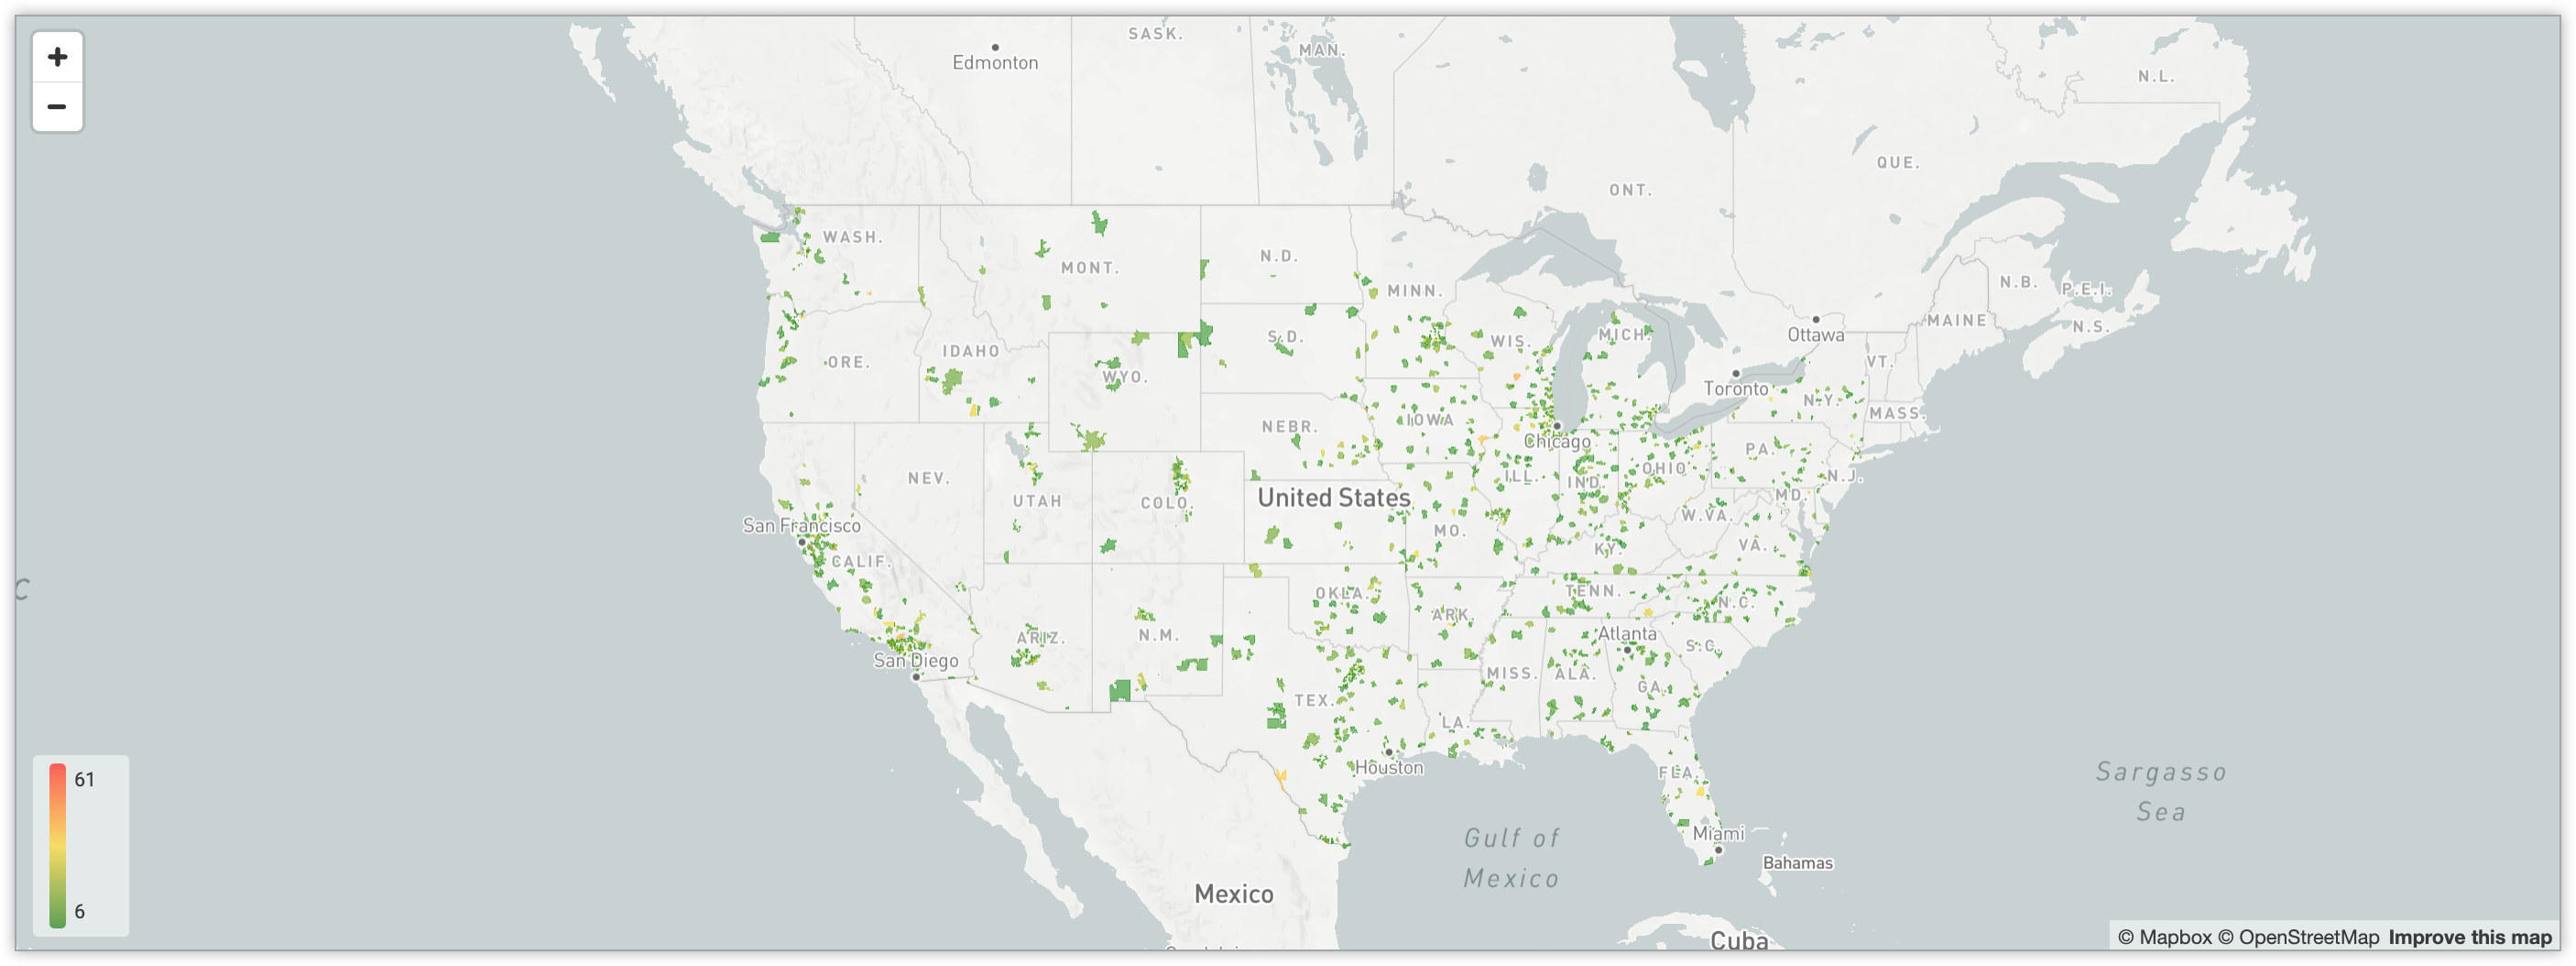 Mapa interactivo que muestra la cantidad de usuarios en los distintos códigos postales de Estados Unidos a través de un sistema de codificación por colores con gradiente.